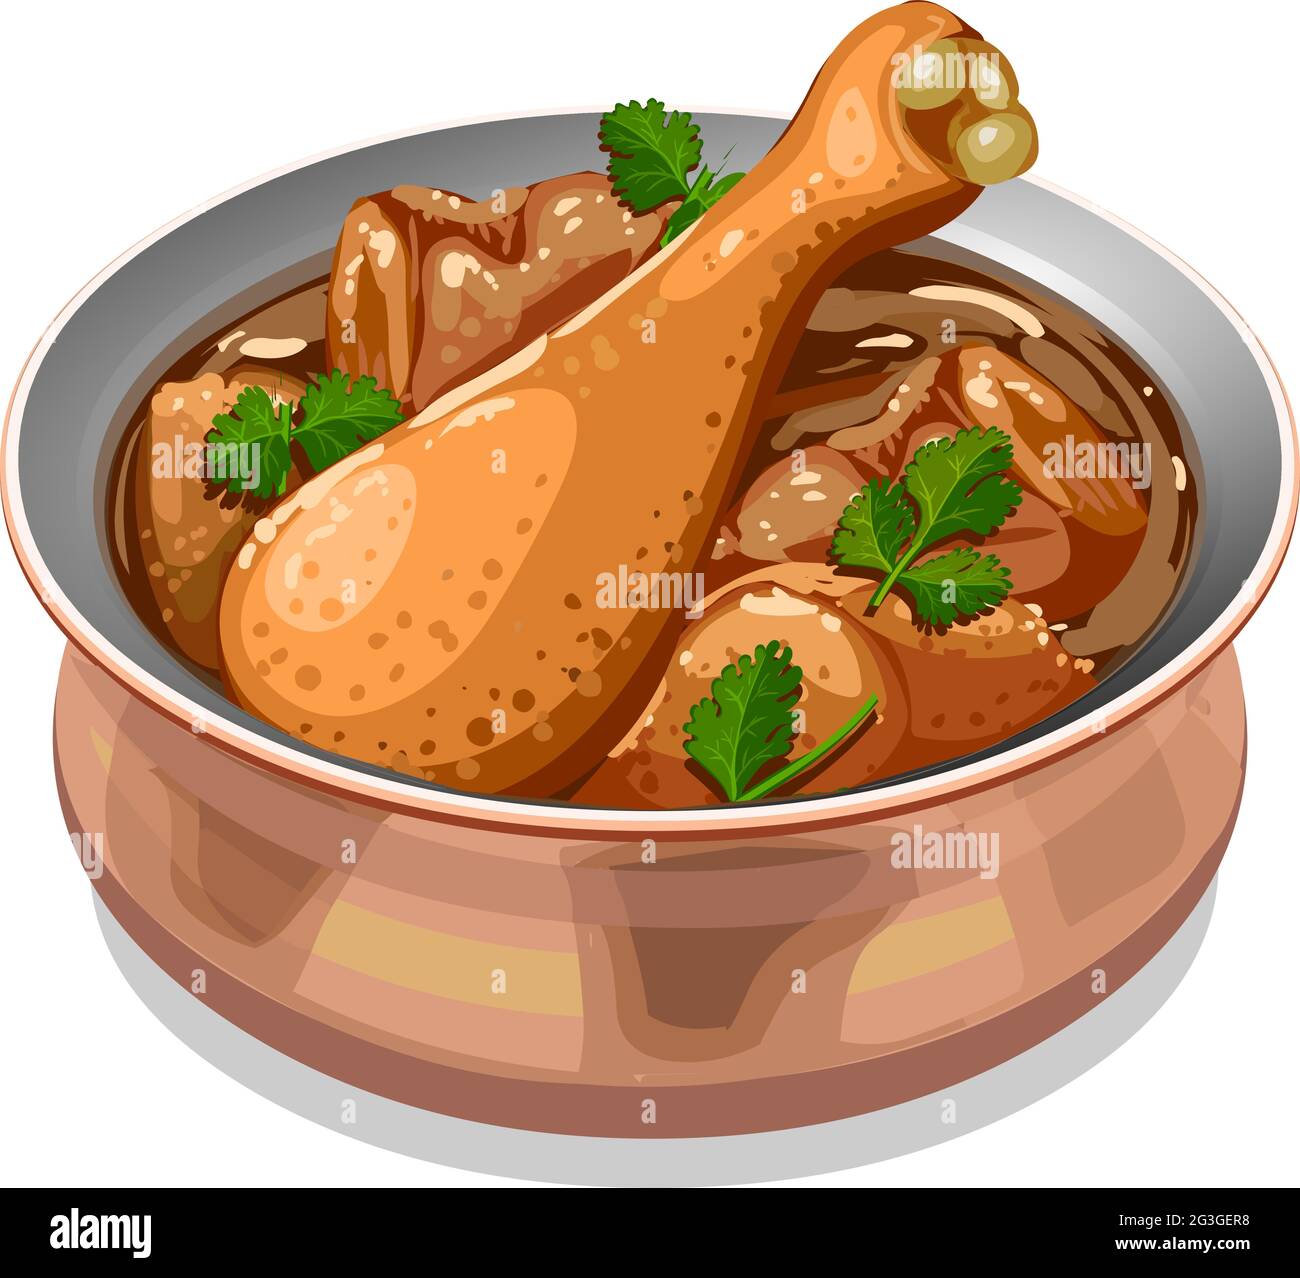 Illustration vectorielle de curry de poulet ou de masala, curry de poulet de style indien du Sud, disposé dans un récipient de cuivre et garni de feuilles de coriandre. Illustration de Vecteur